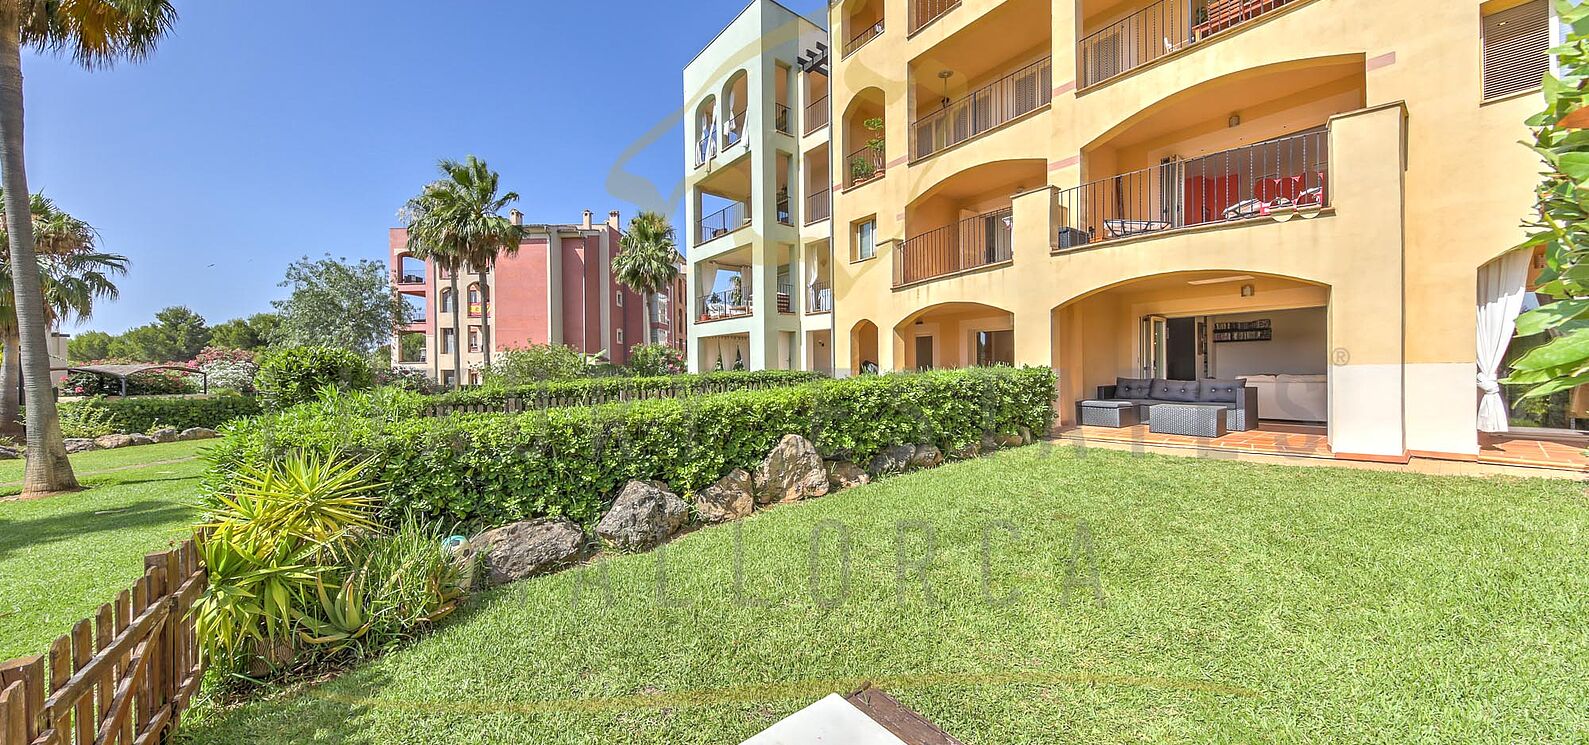 Apartment complex Belavent in Santa Ponsa 